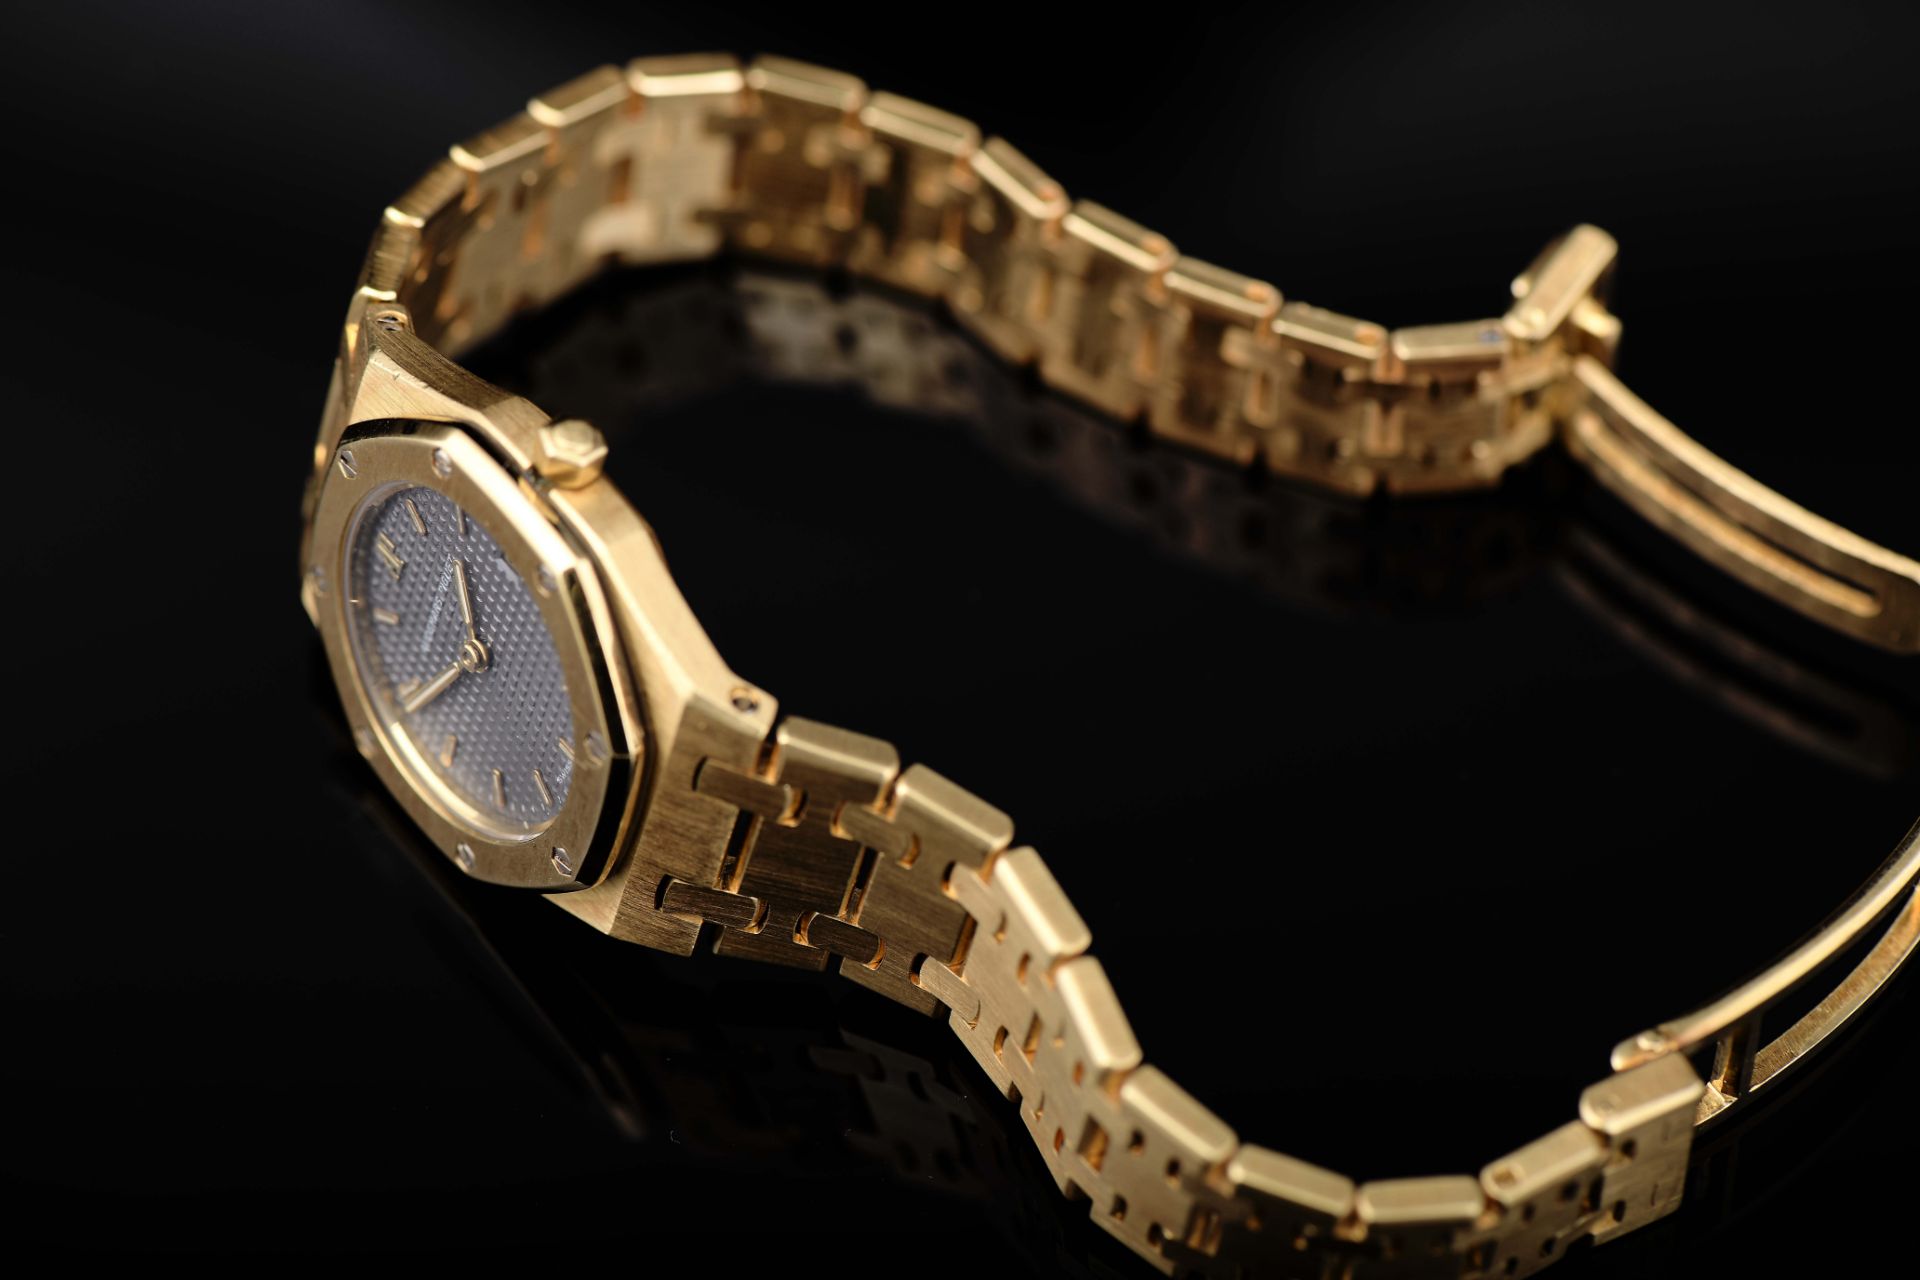 An AUDEMAR PIGUET wristwatch - model ROYAL OAK - Image 2 of 6